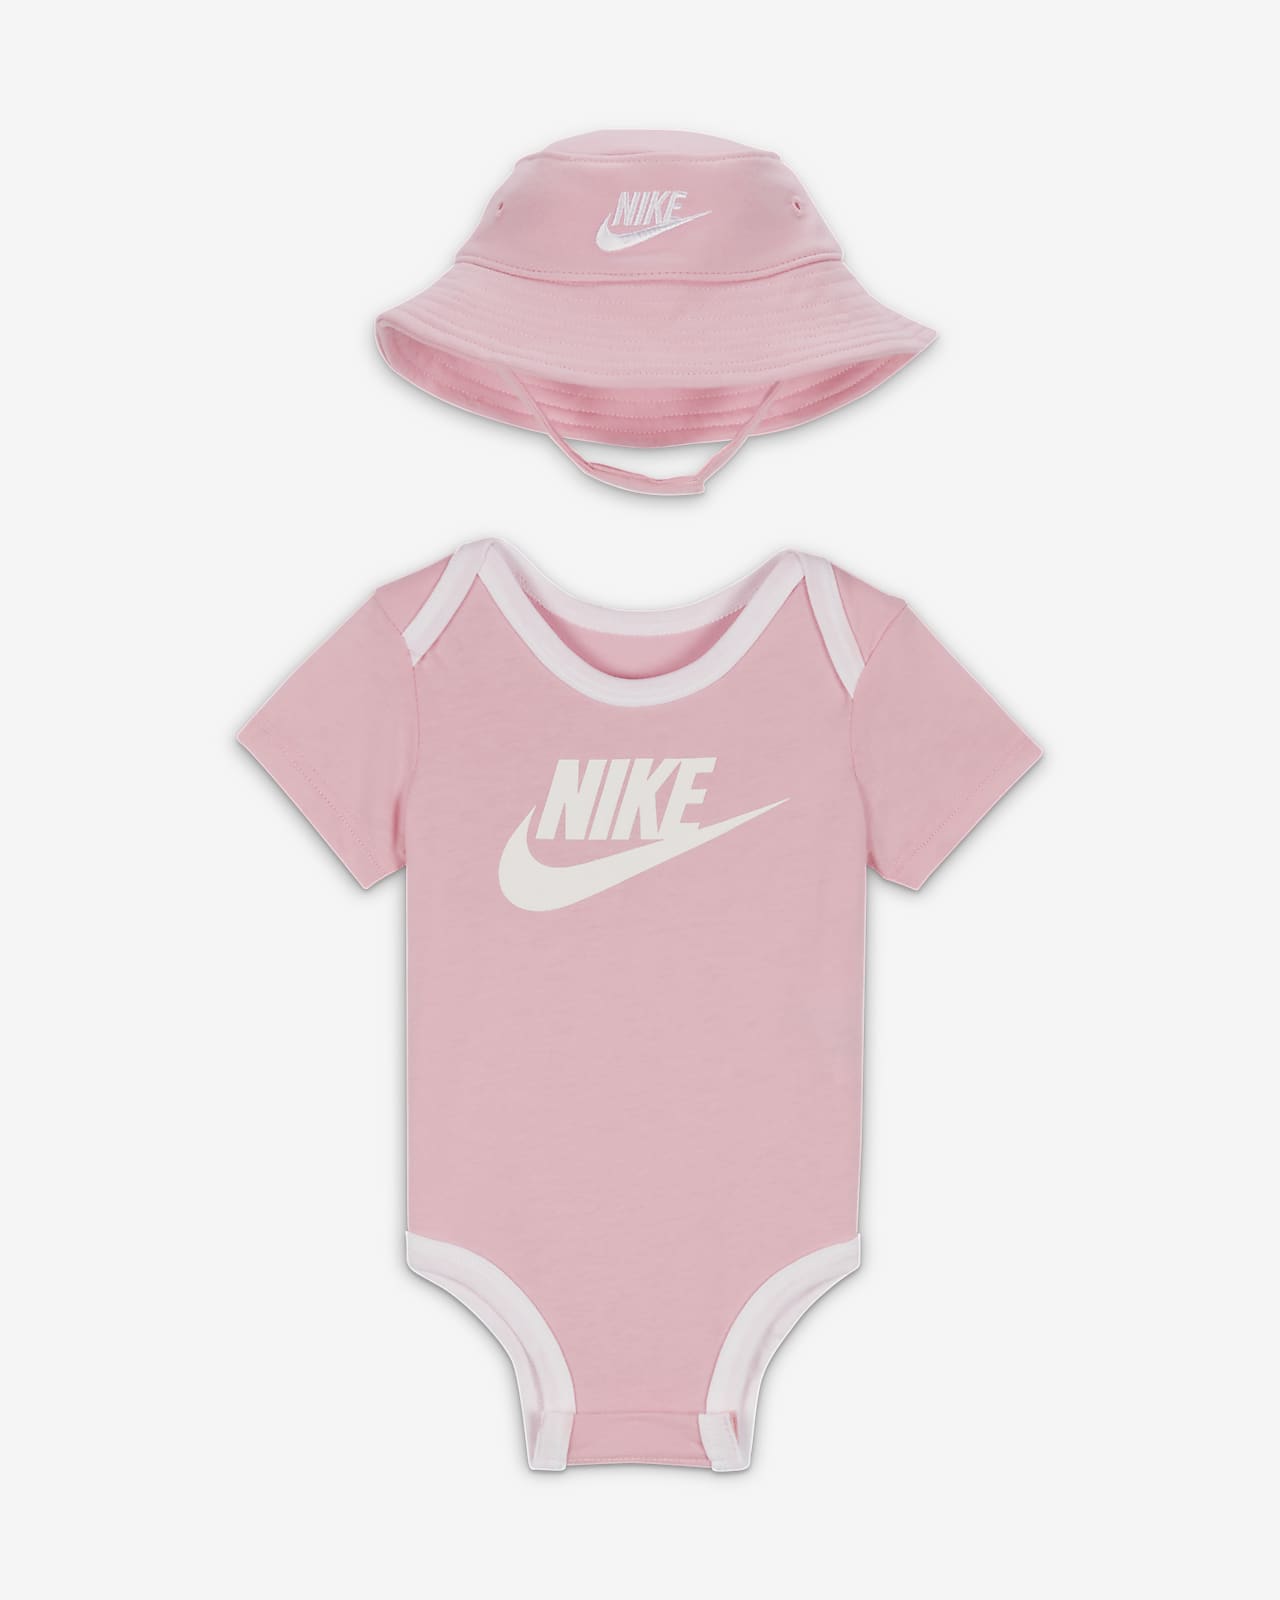 udarbejde Bounce krise Nike Core-sæt med bøllehat og bodystocking til babyer. Nike DK